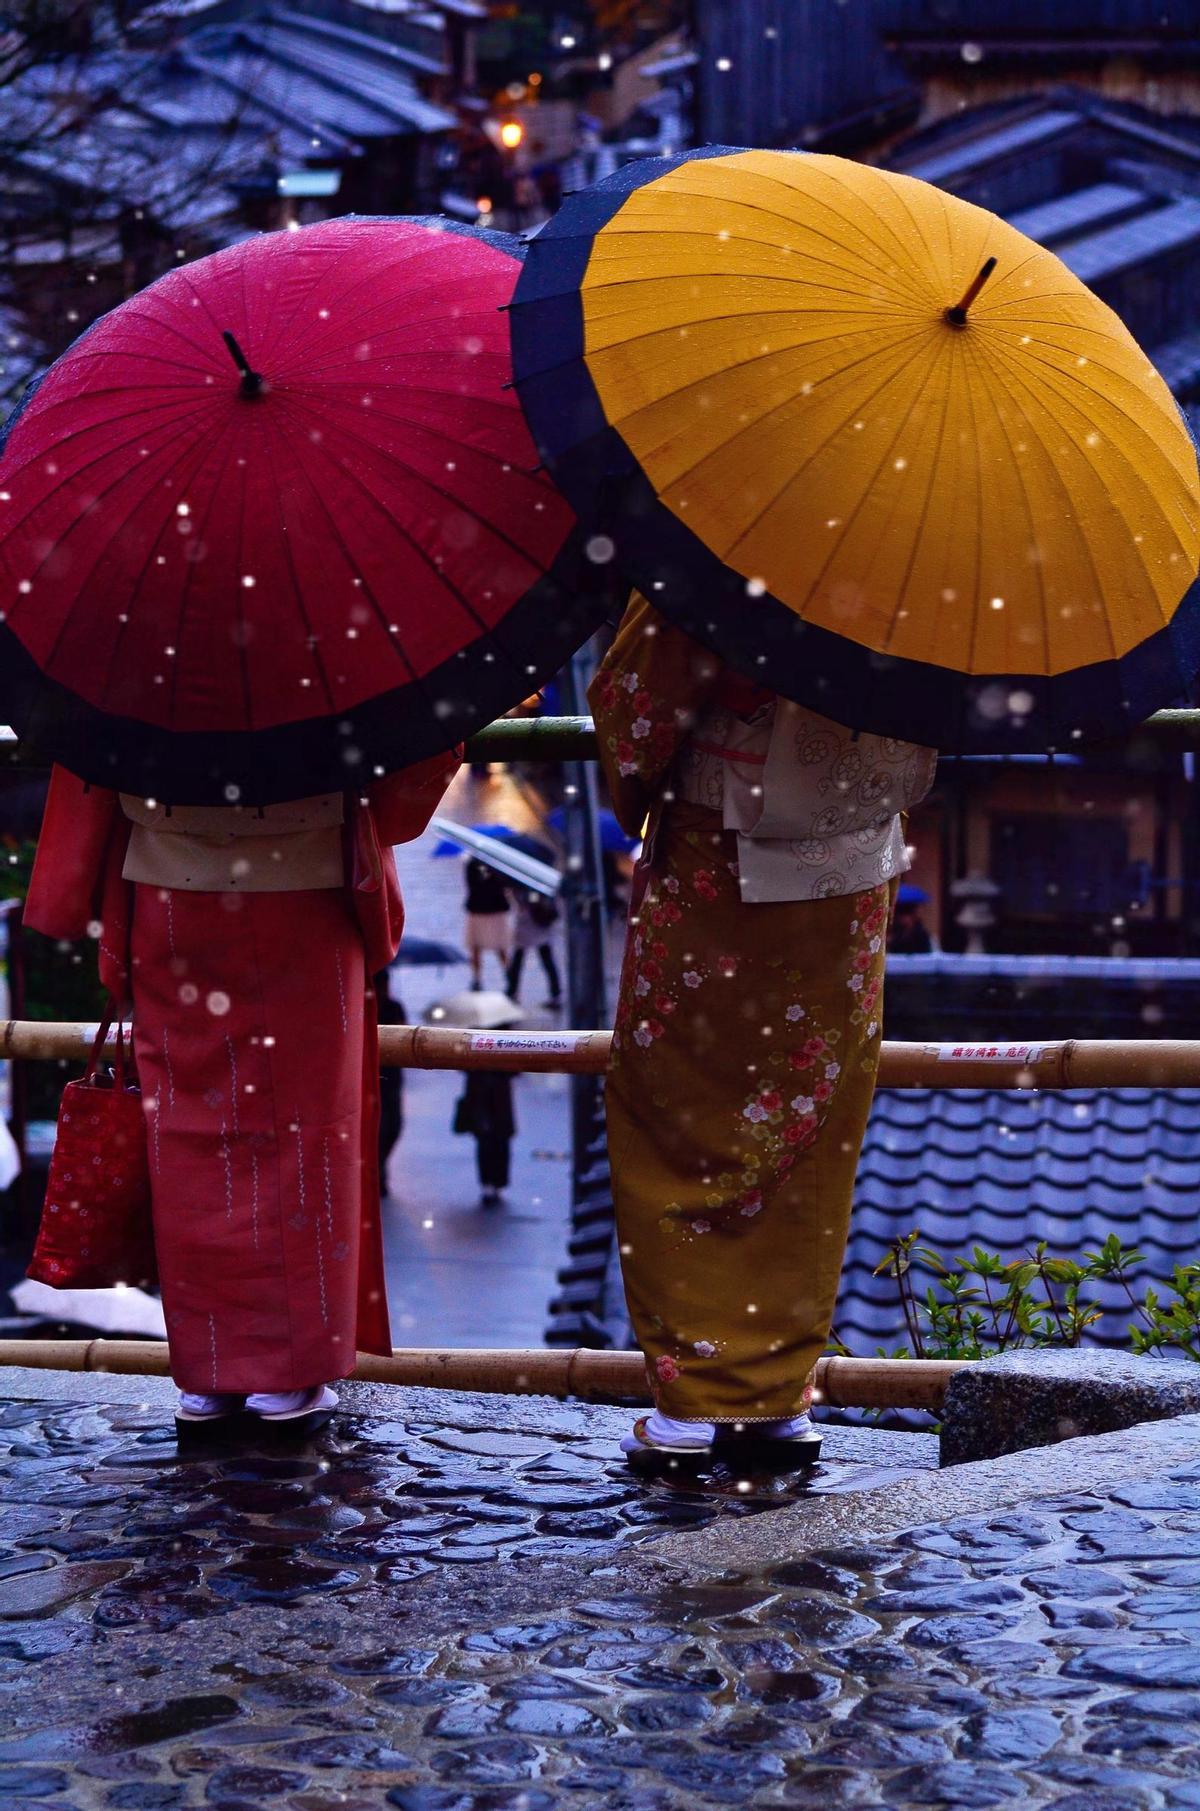 Dos mujeres de espalda observan una calle de Kioto cuando el fotógrafo se percata de su presencia y toma una imagen espontánea.